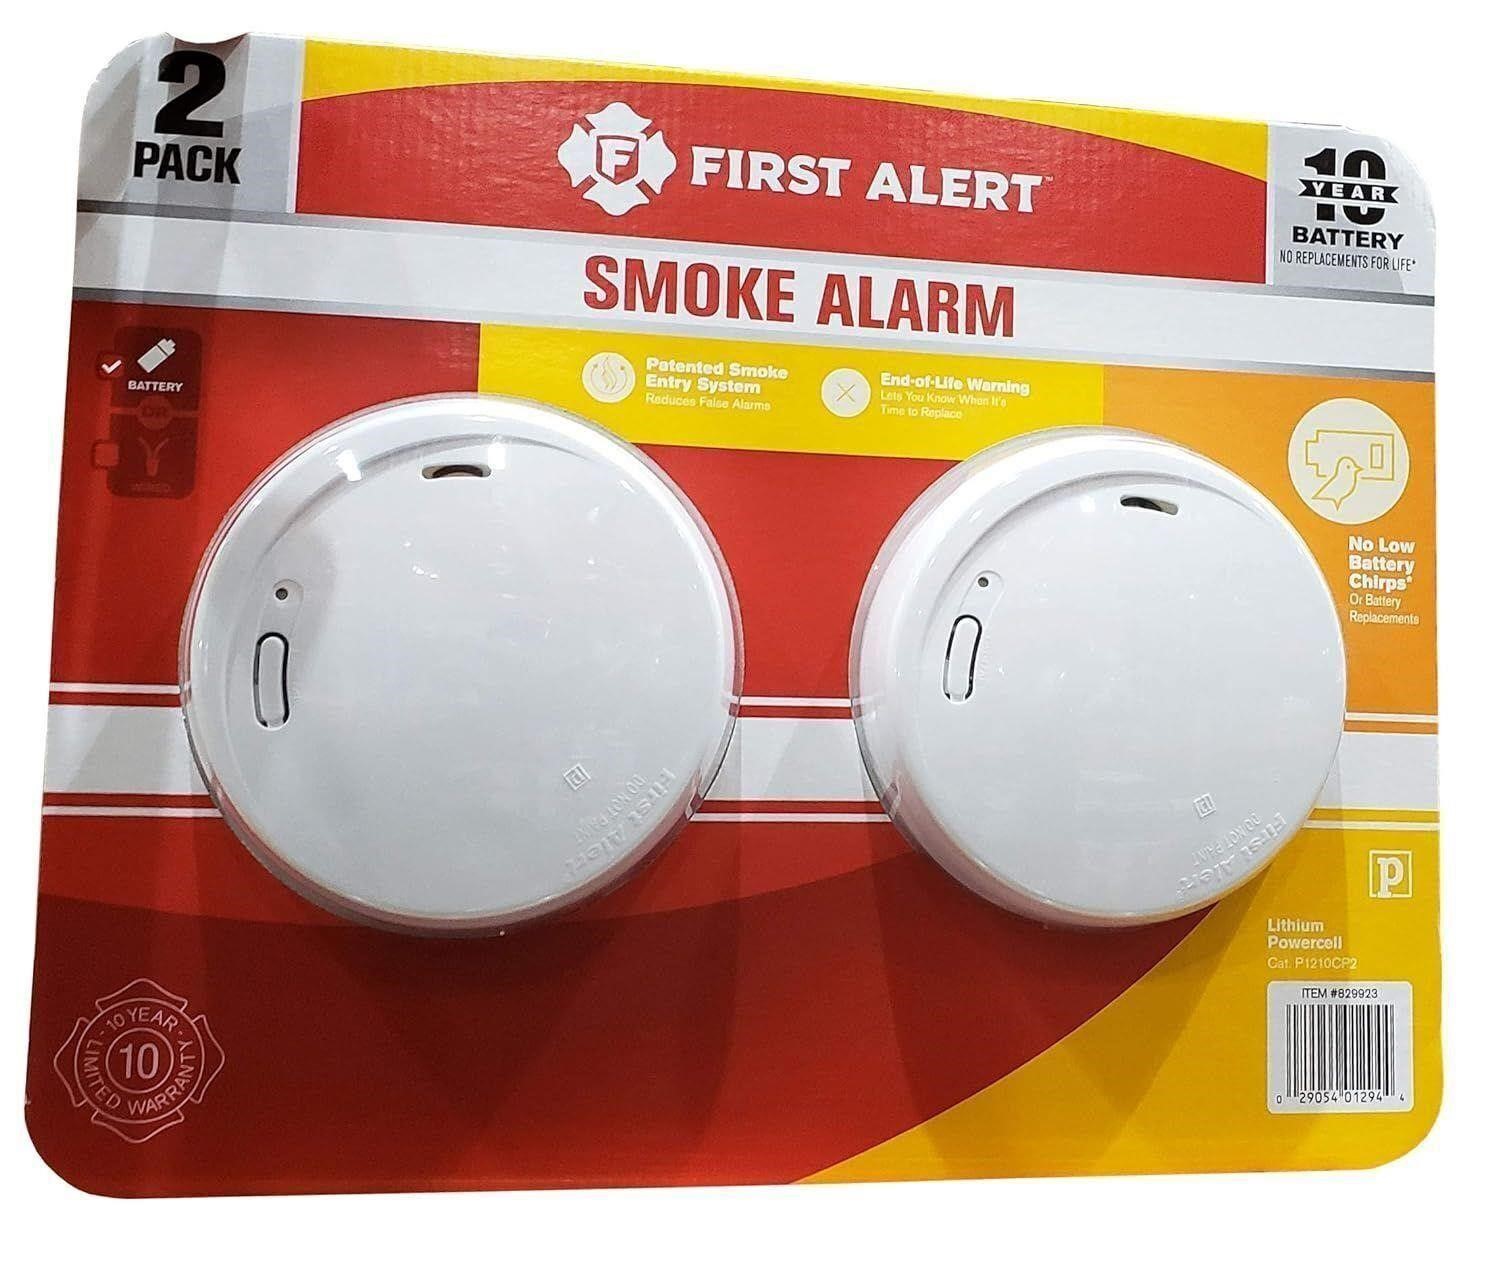 First Alert 10 Year Smoke Alarm 2 Pack,